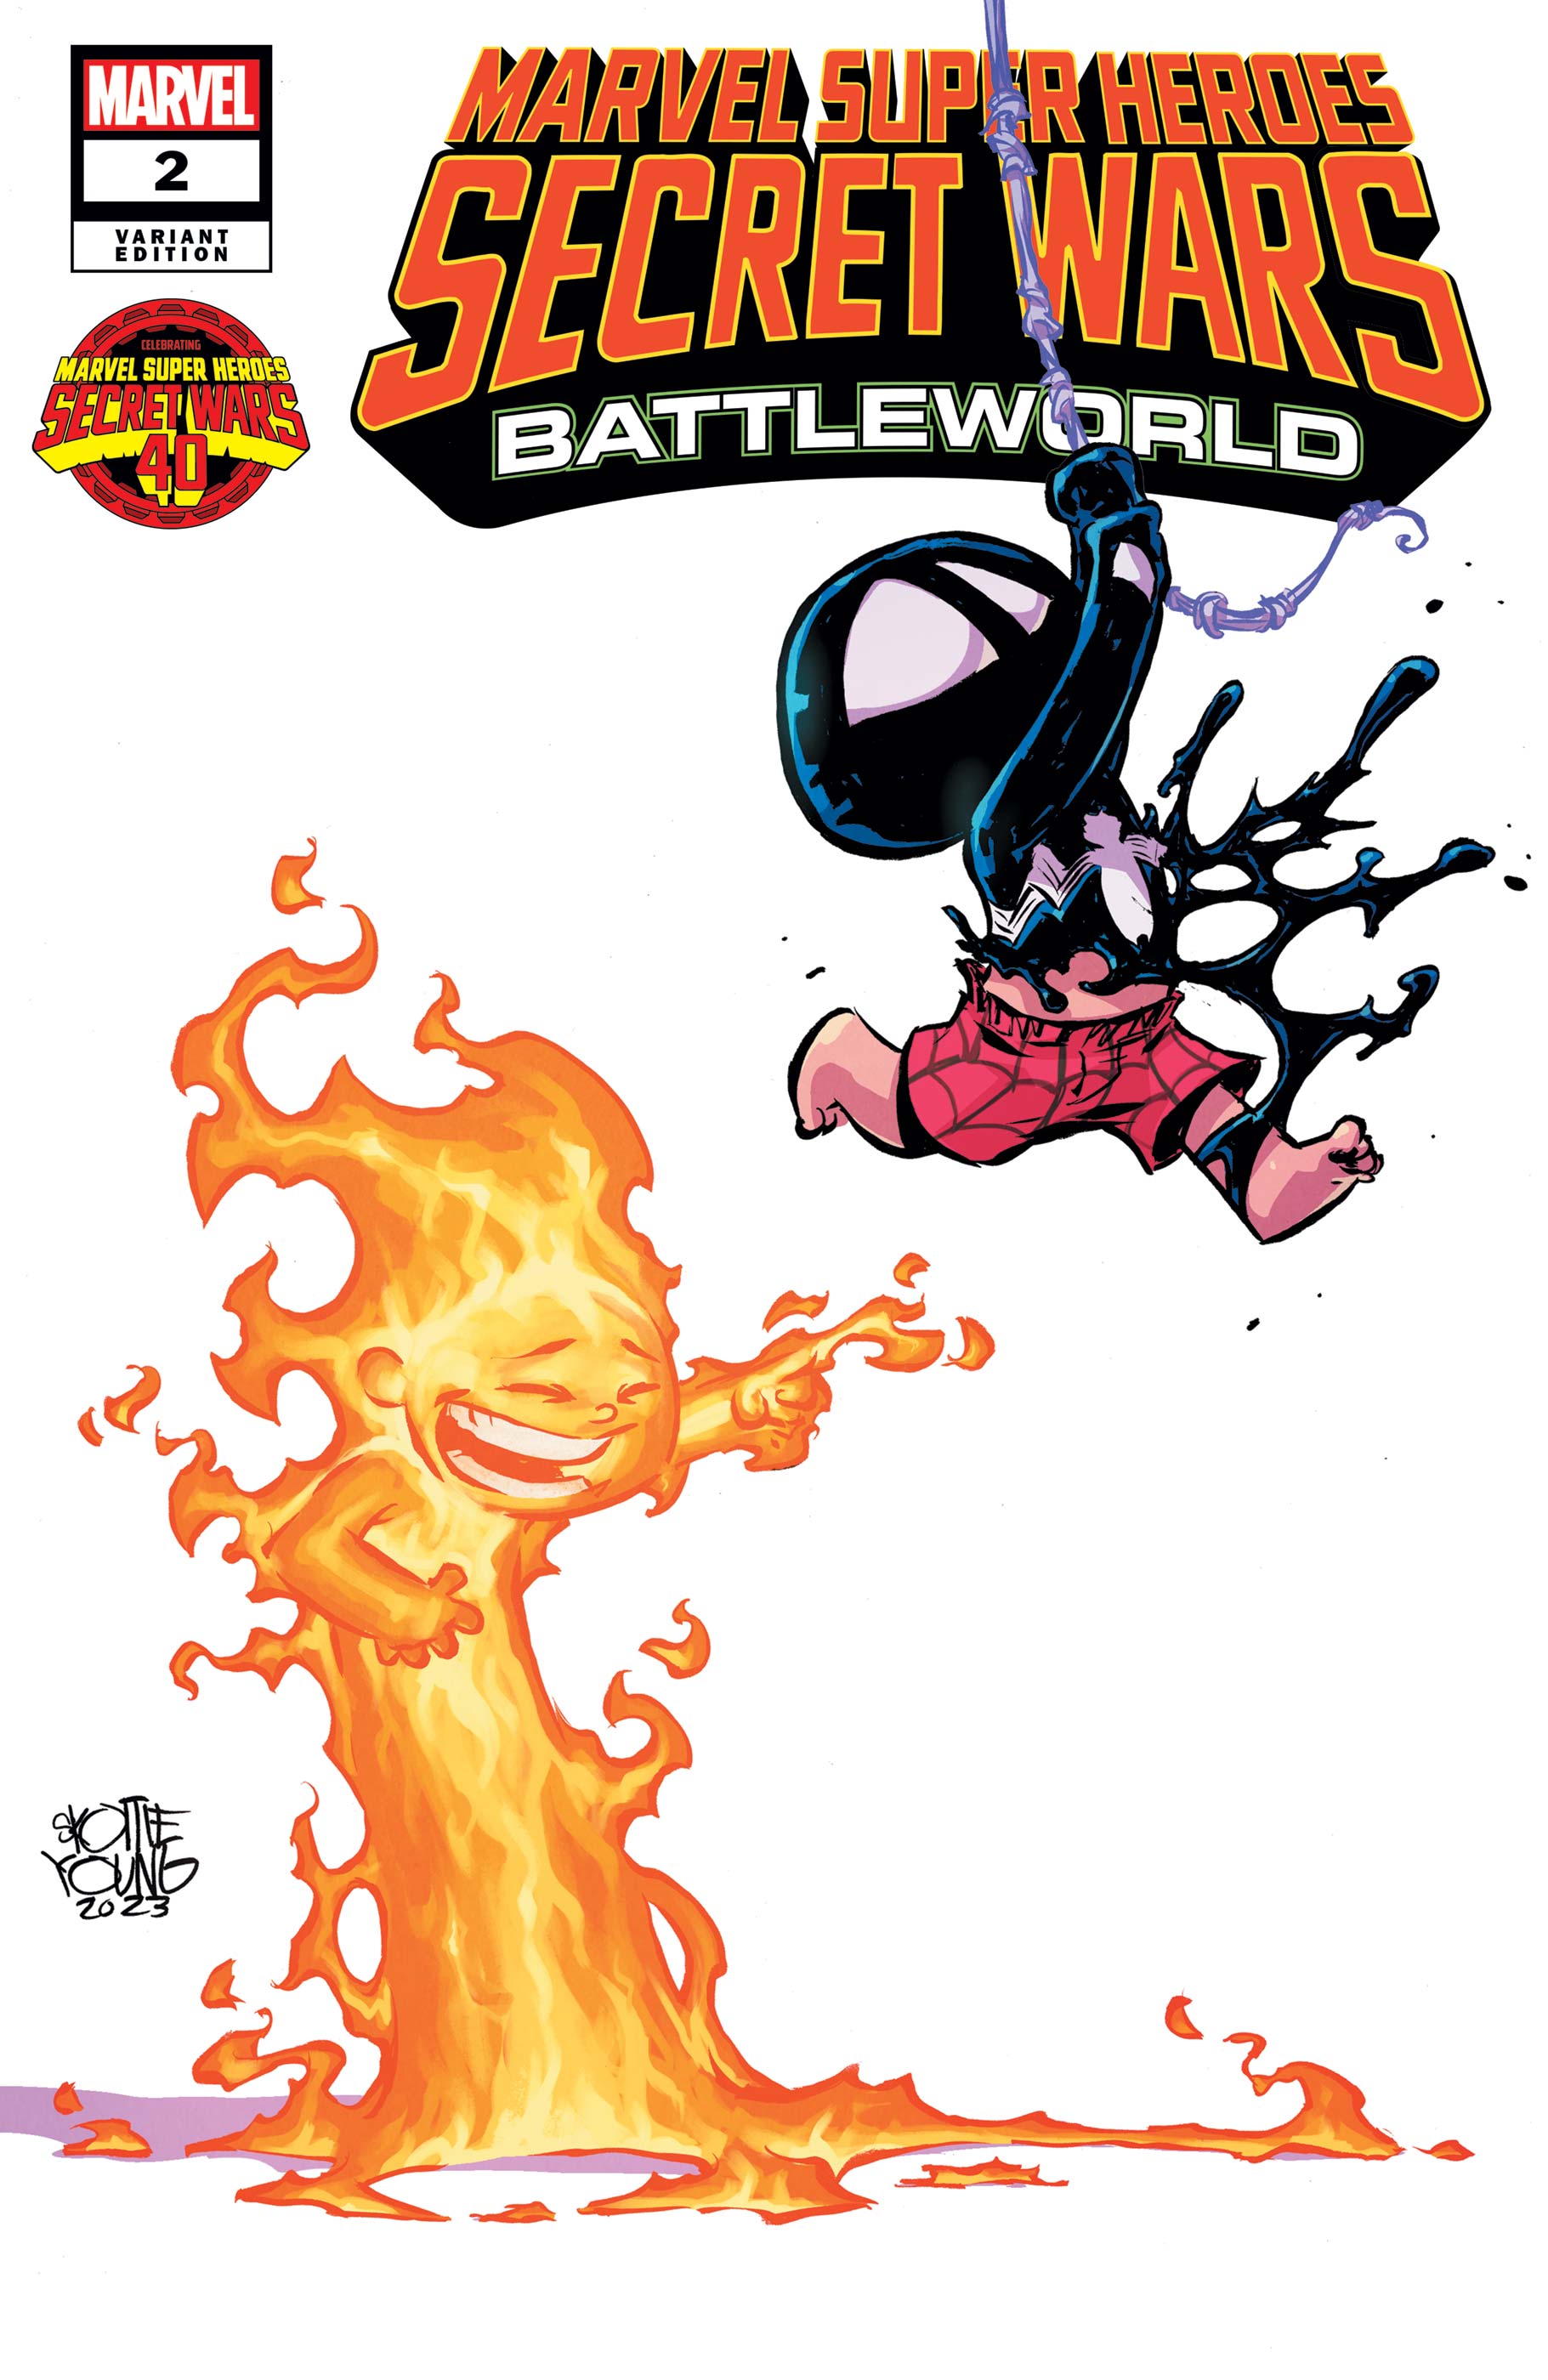 Marvel Super Heroes Secret Wars: Battleworld (2023) #2 (Variant)